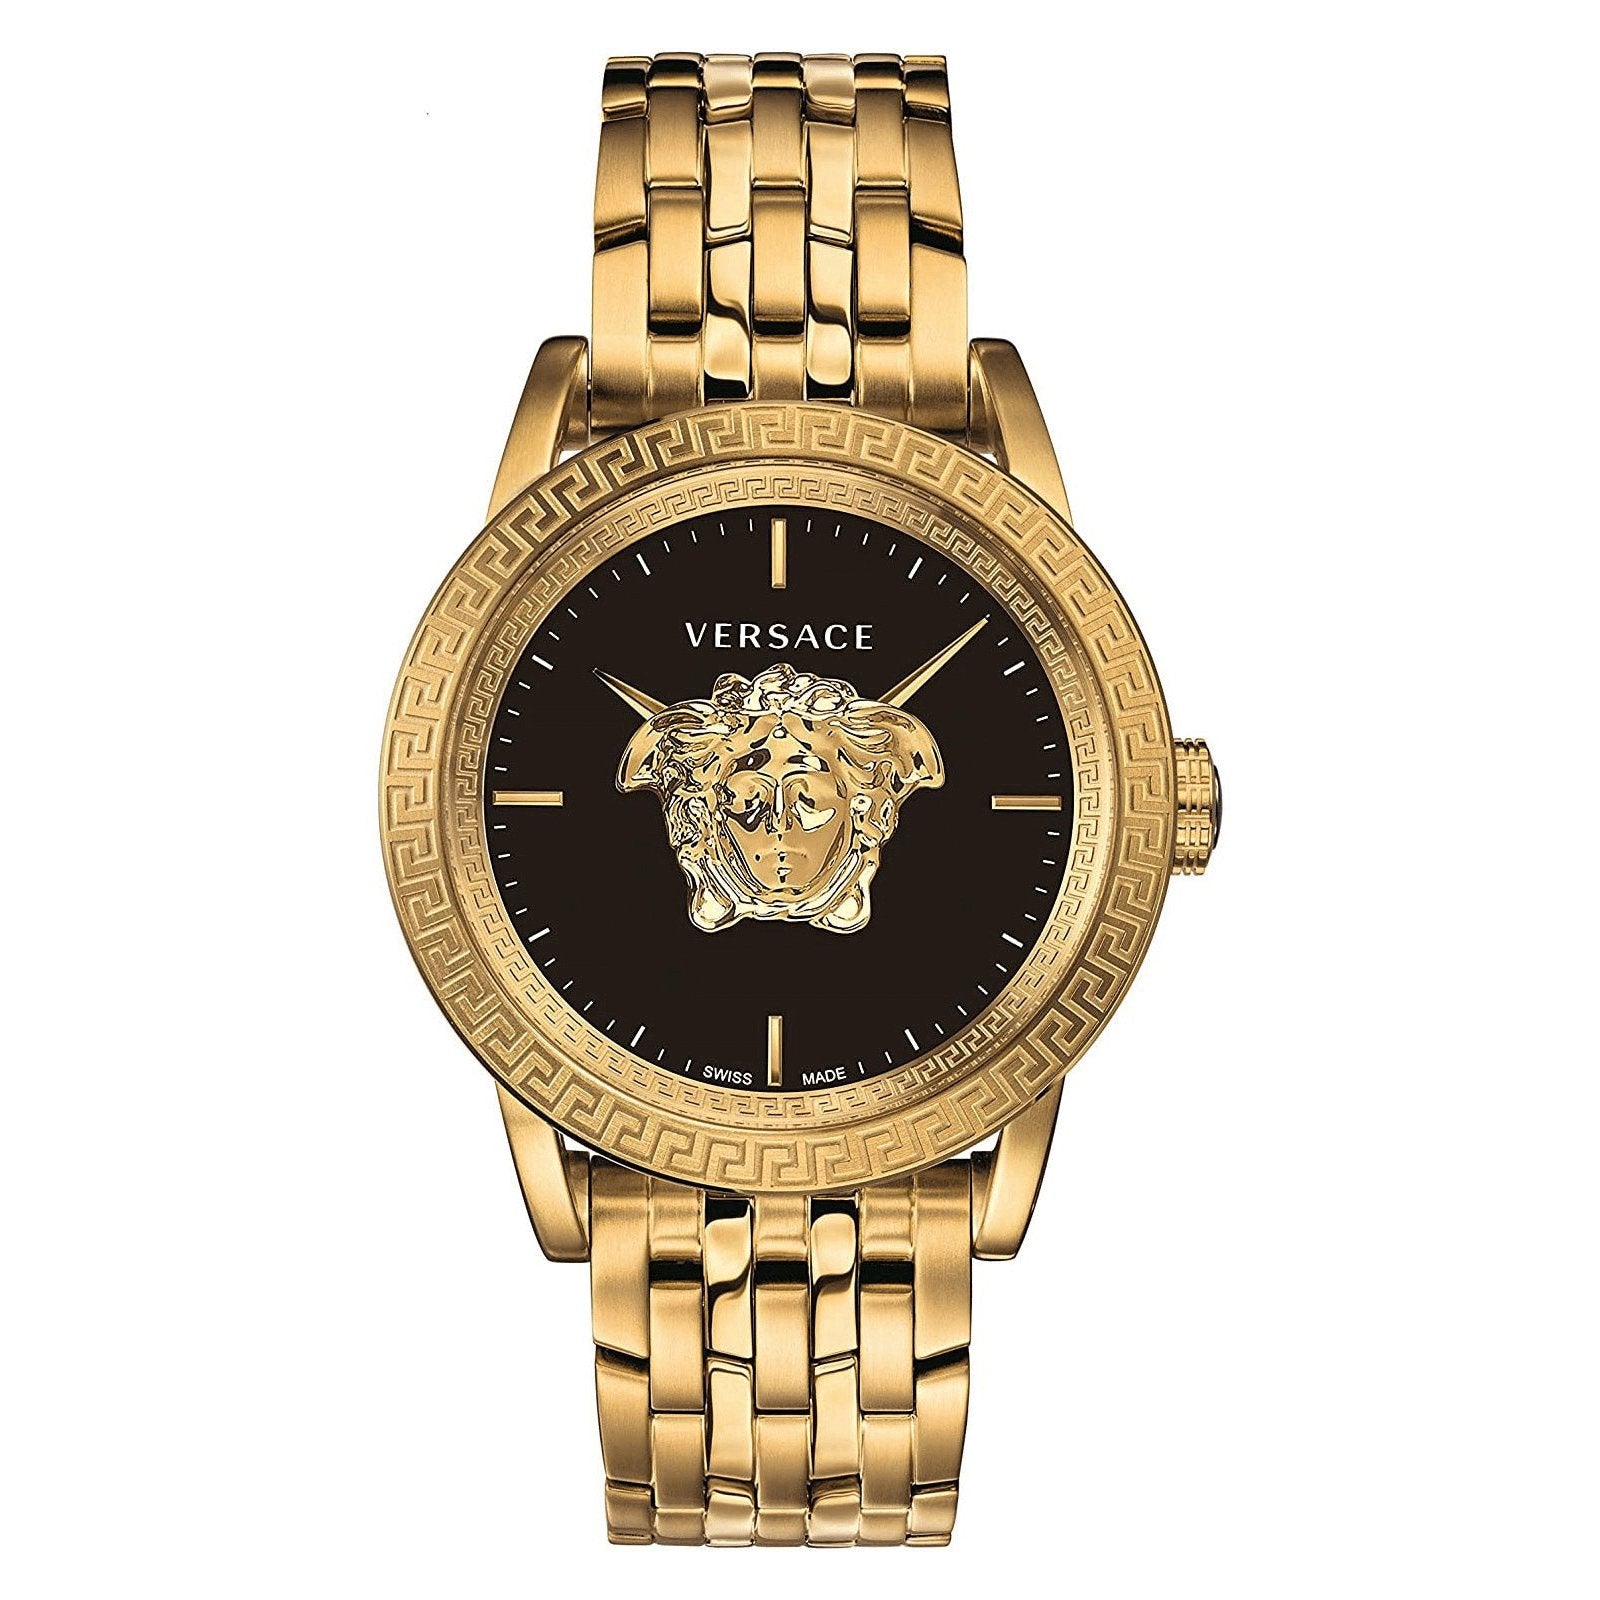 Versace Men's Watch Palazzo Empire IP Gold VERD00818 - Watches & Crystals